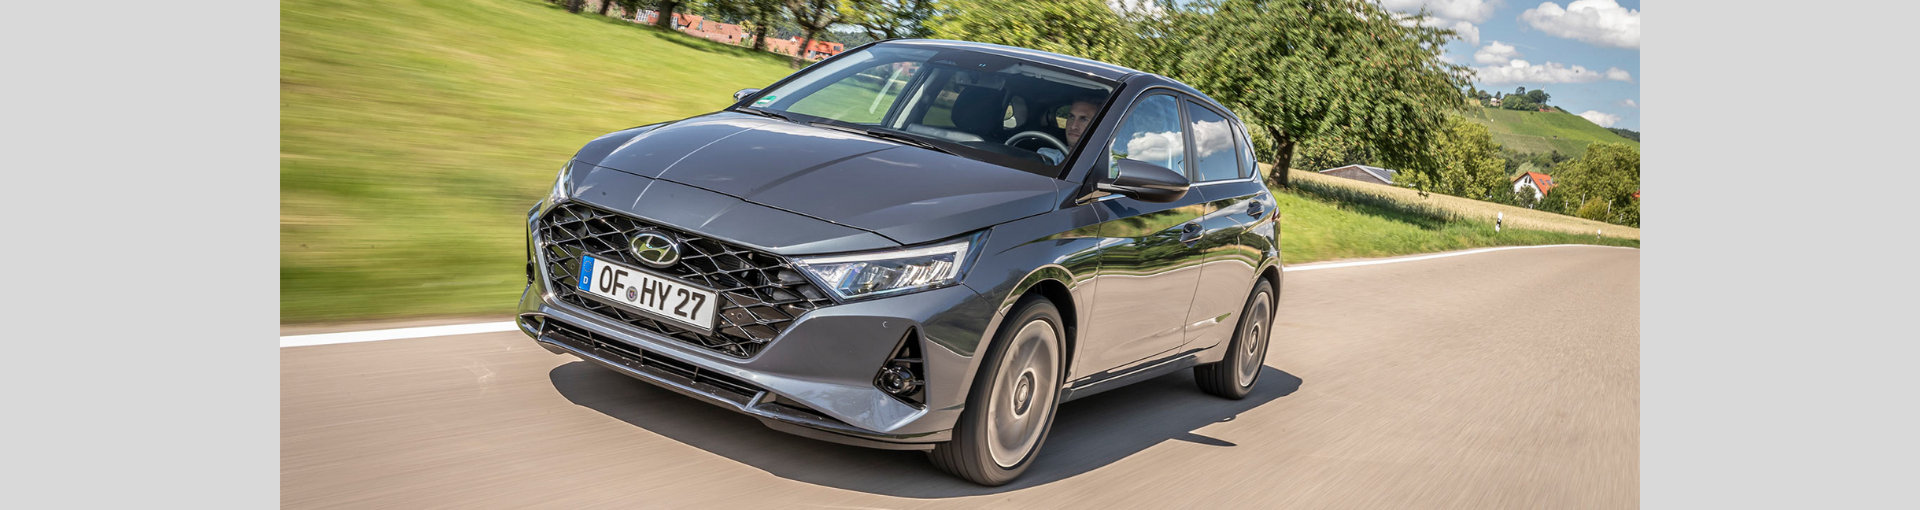 Hyundai i20 Nowej Generacji ceny i specyfikacje